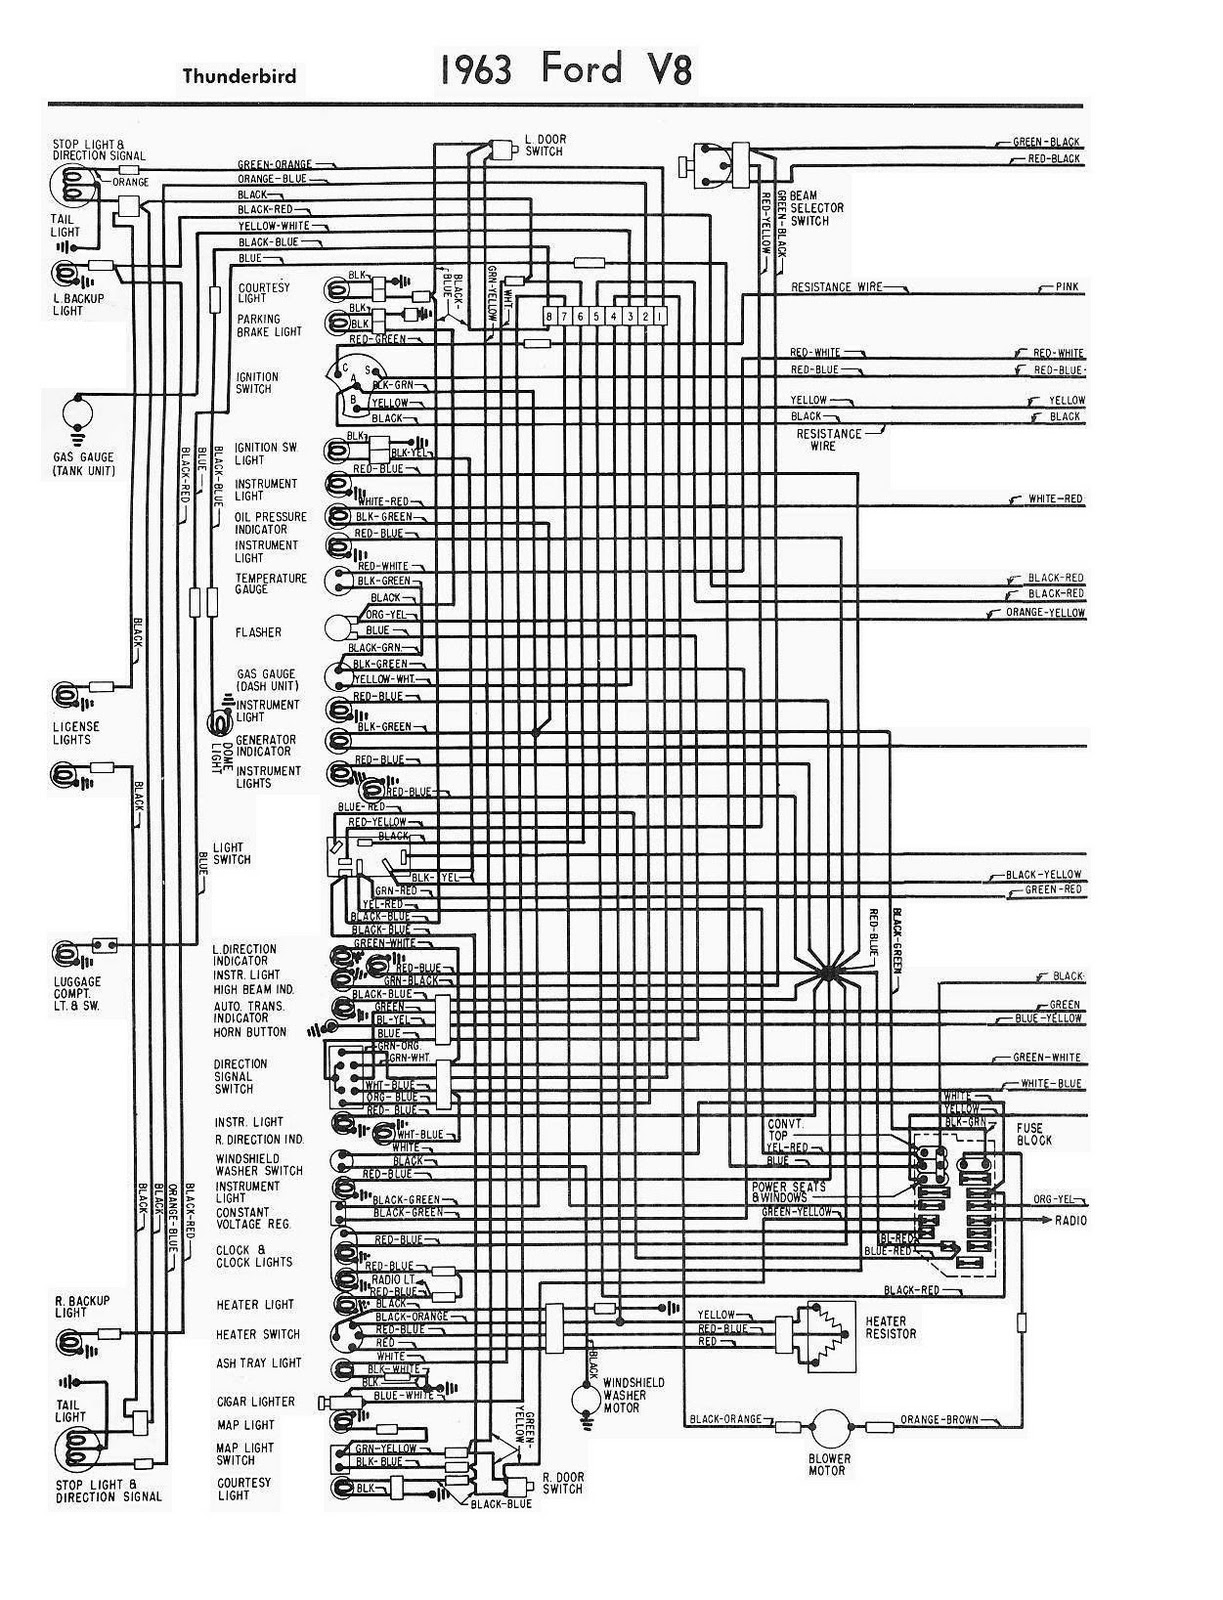 [DIAGRAM] 1966 Ford Thunderbird Wiring Diagram Auto Diagrams